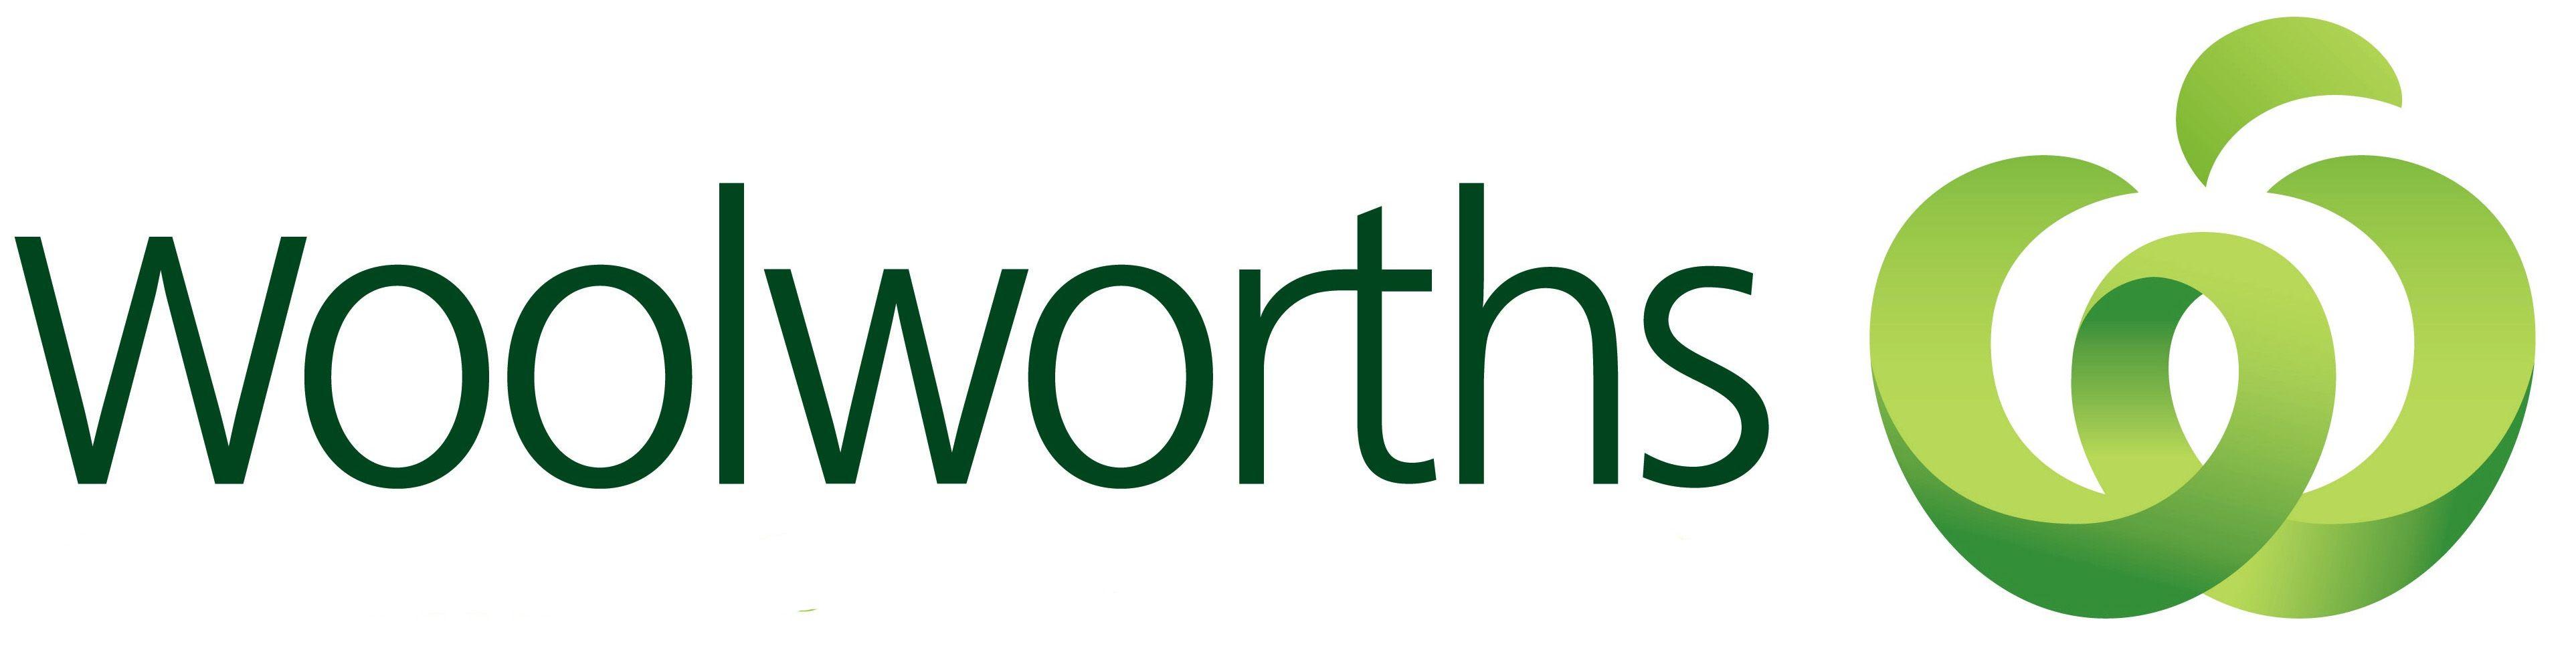 Woolworths Australia Logo - supermarkets | ™Watch